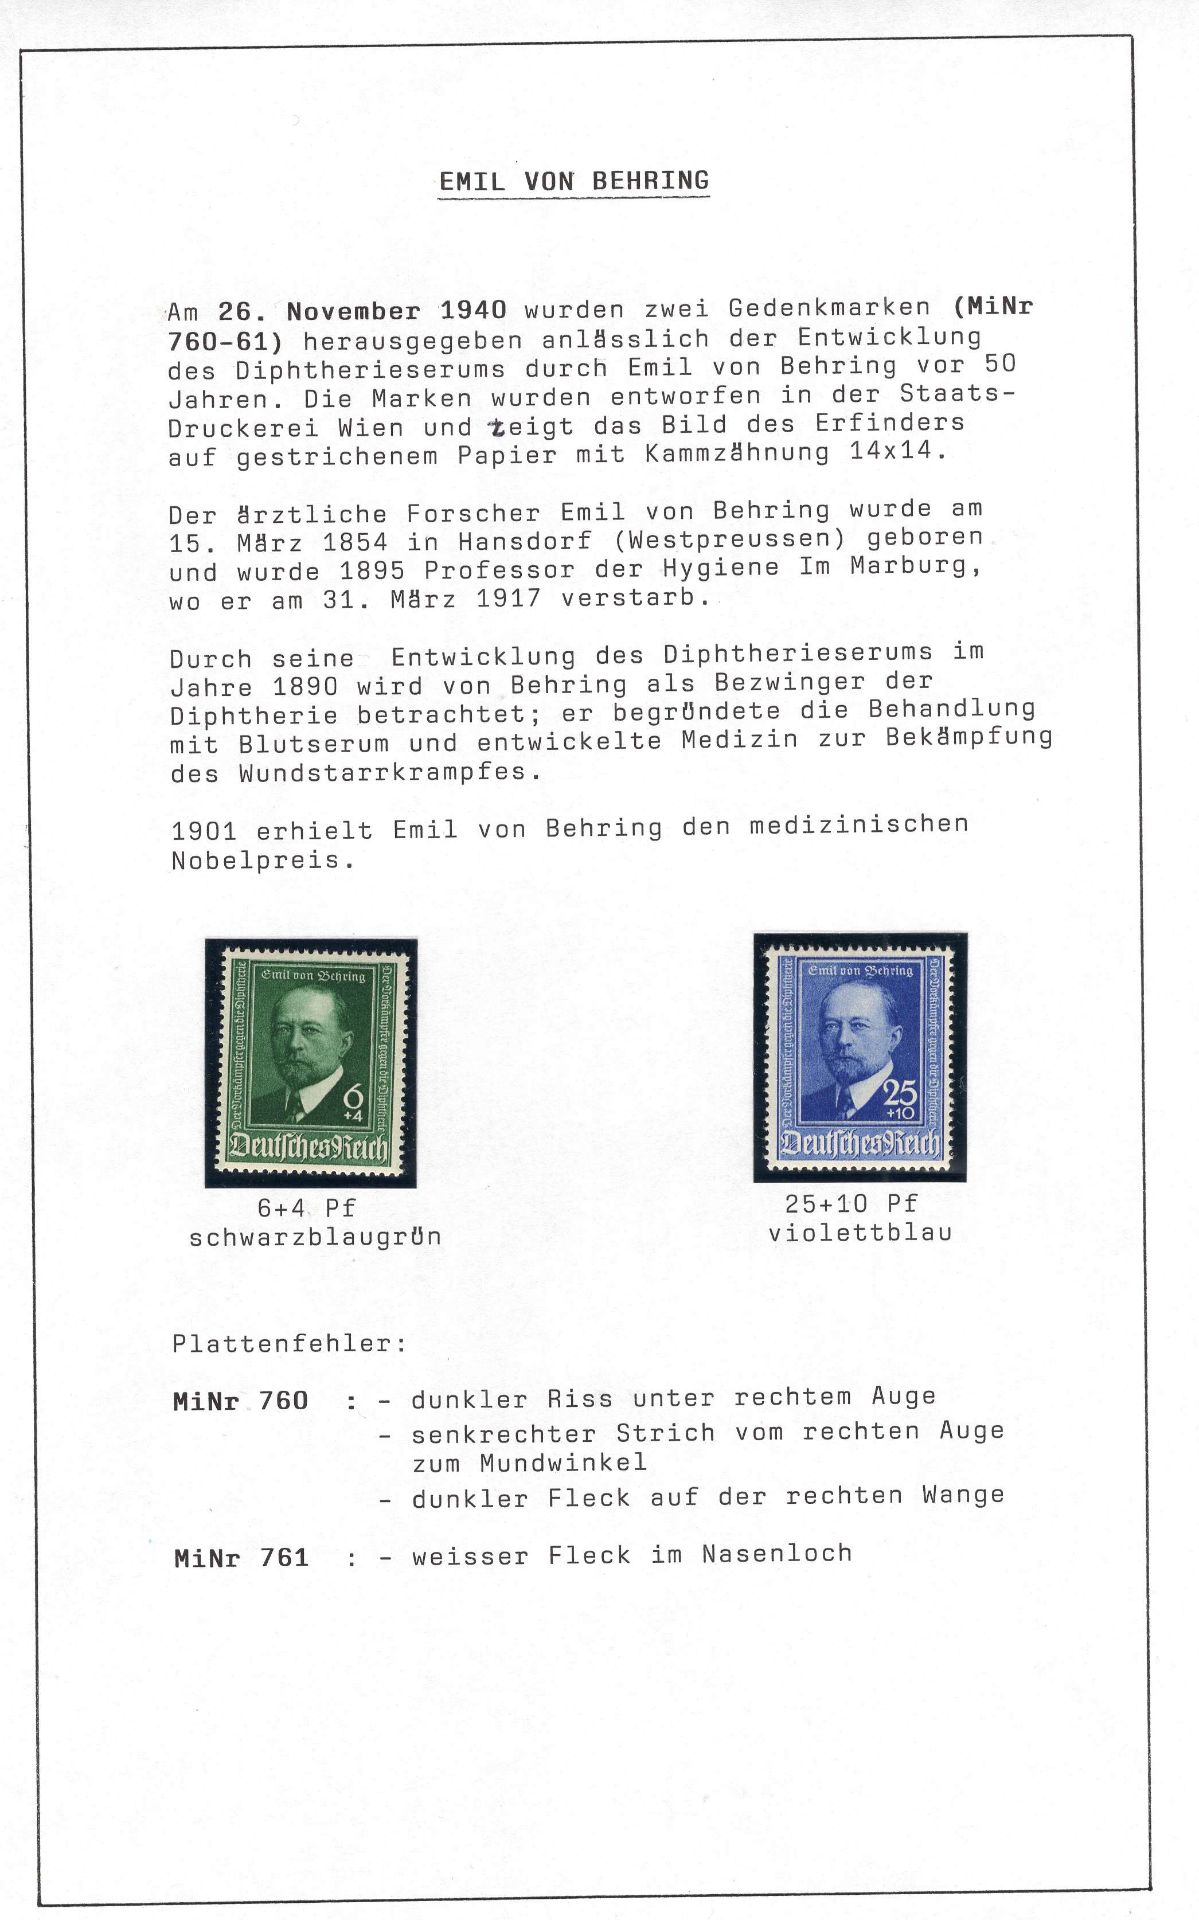 Deutsches Reich 1940, Mi. - Nr. 760/61, Emil von Behring. In tadelloser postfrischer Erhaltung.